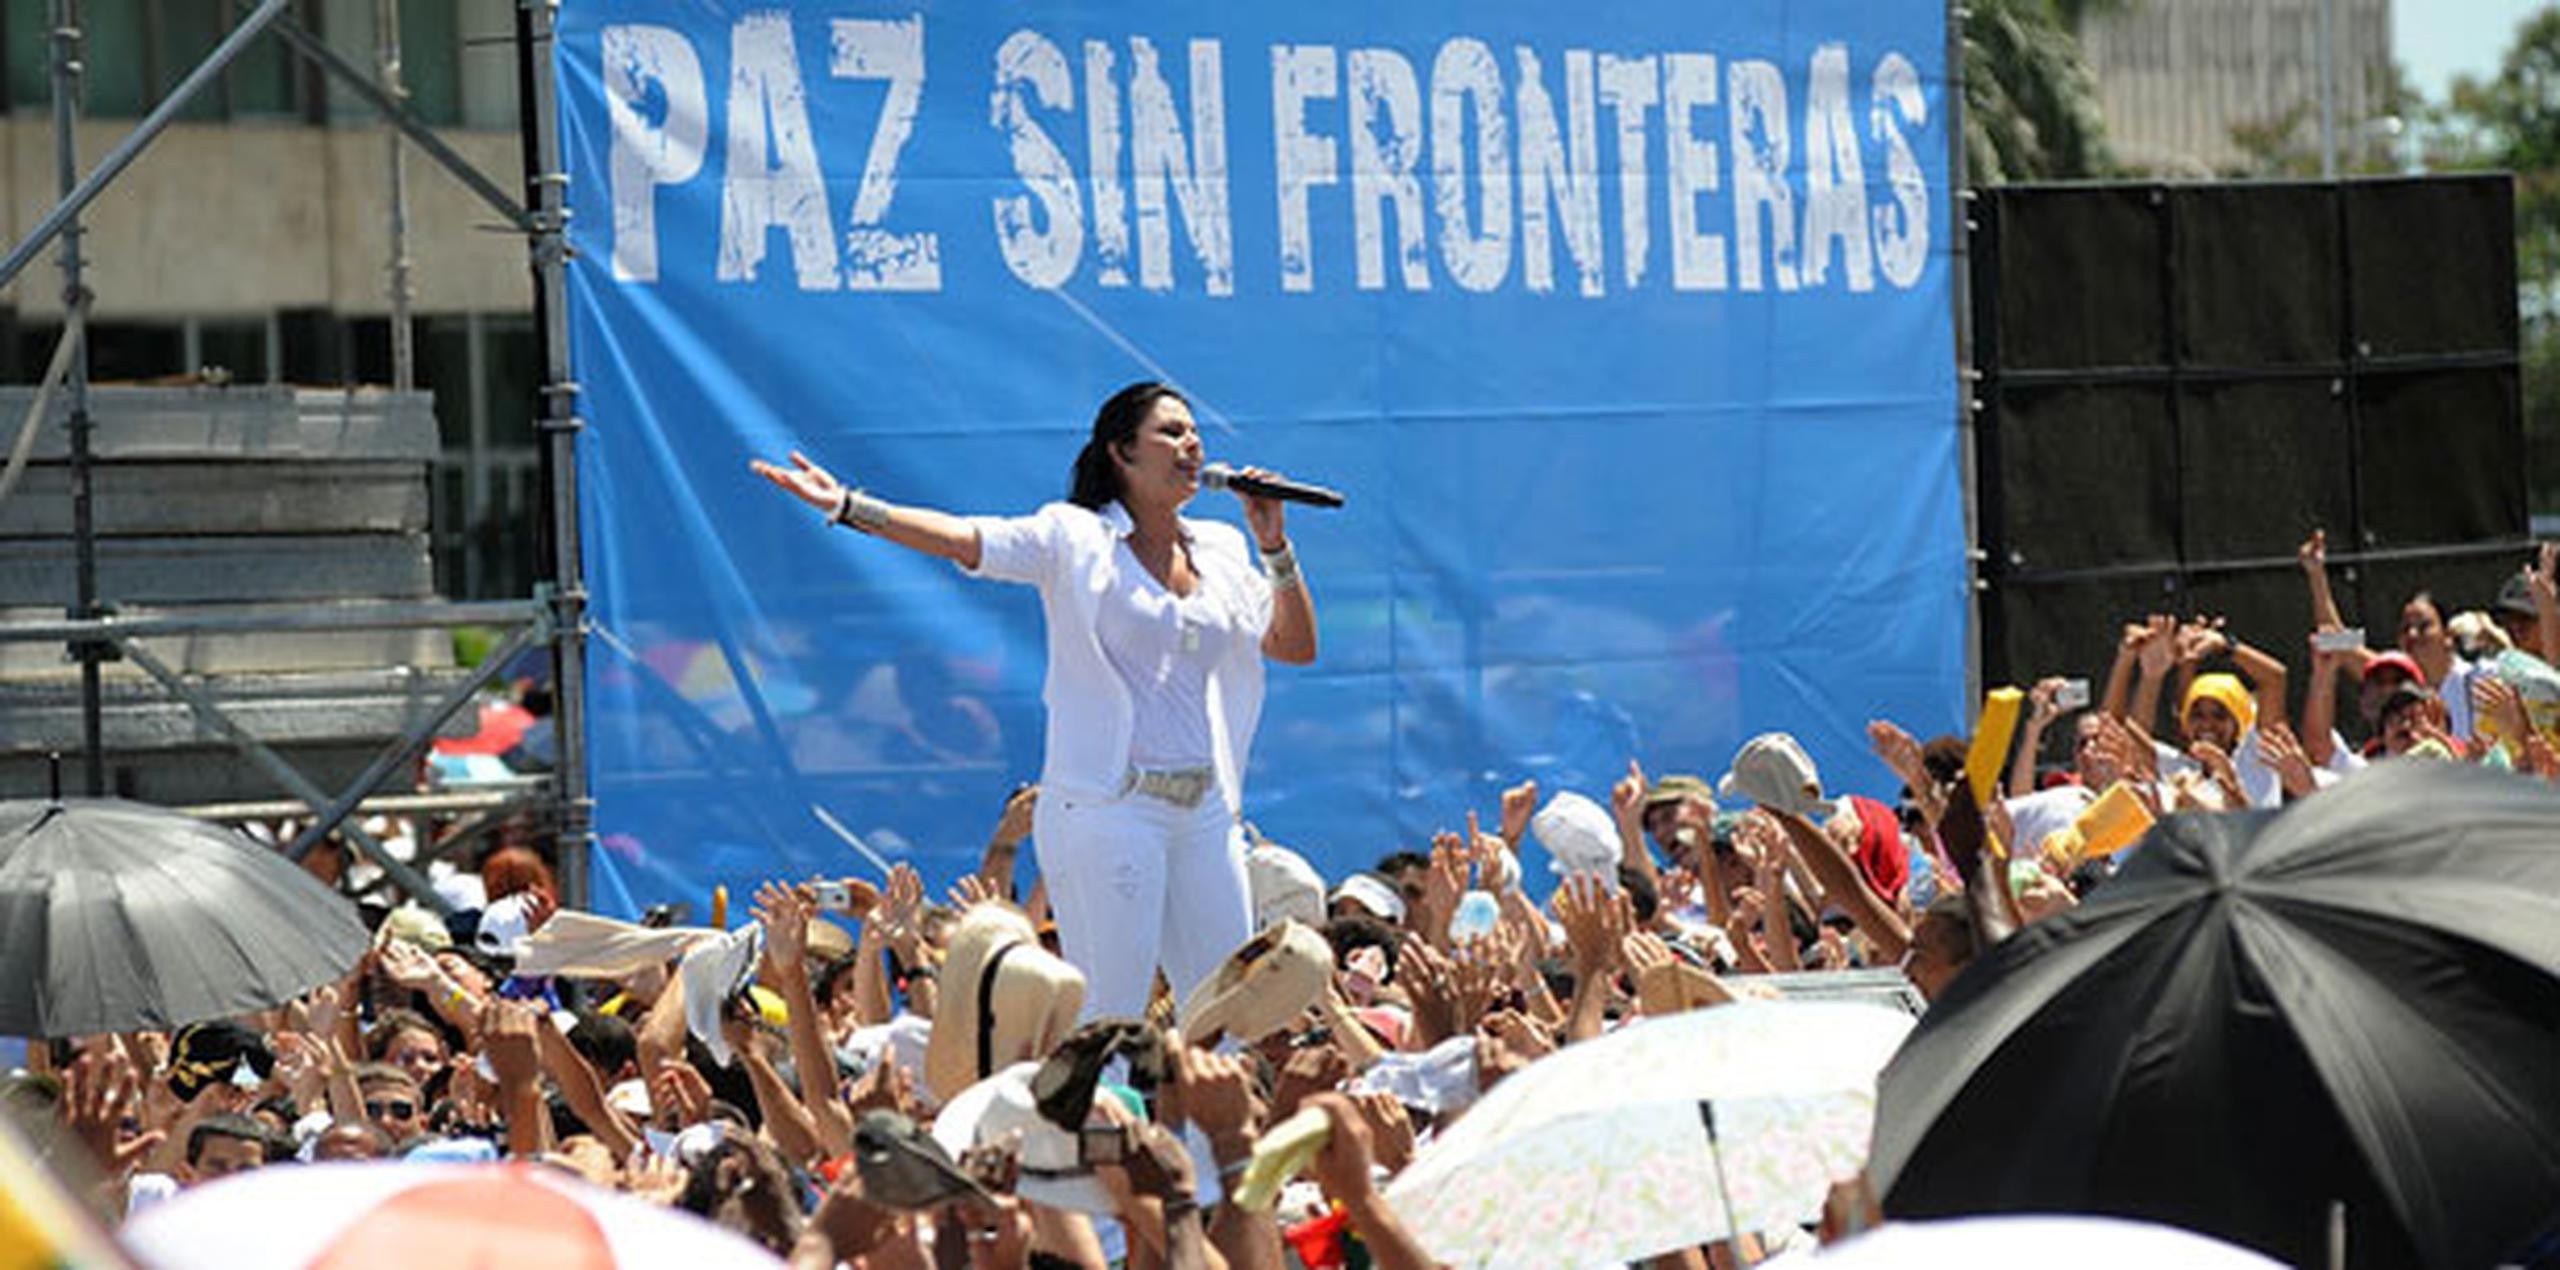 Olga Tañón se presentó en el concierto "Paz Sin Fronteras", el 20 de septiembre de 2009, en La Habana, junto con Juanes, Miguel Bosé y una docena más de artistas locales.(Archivo)